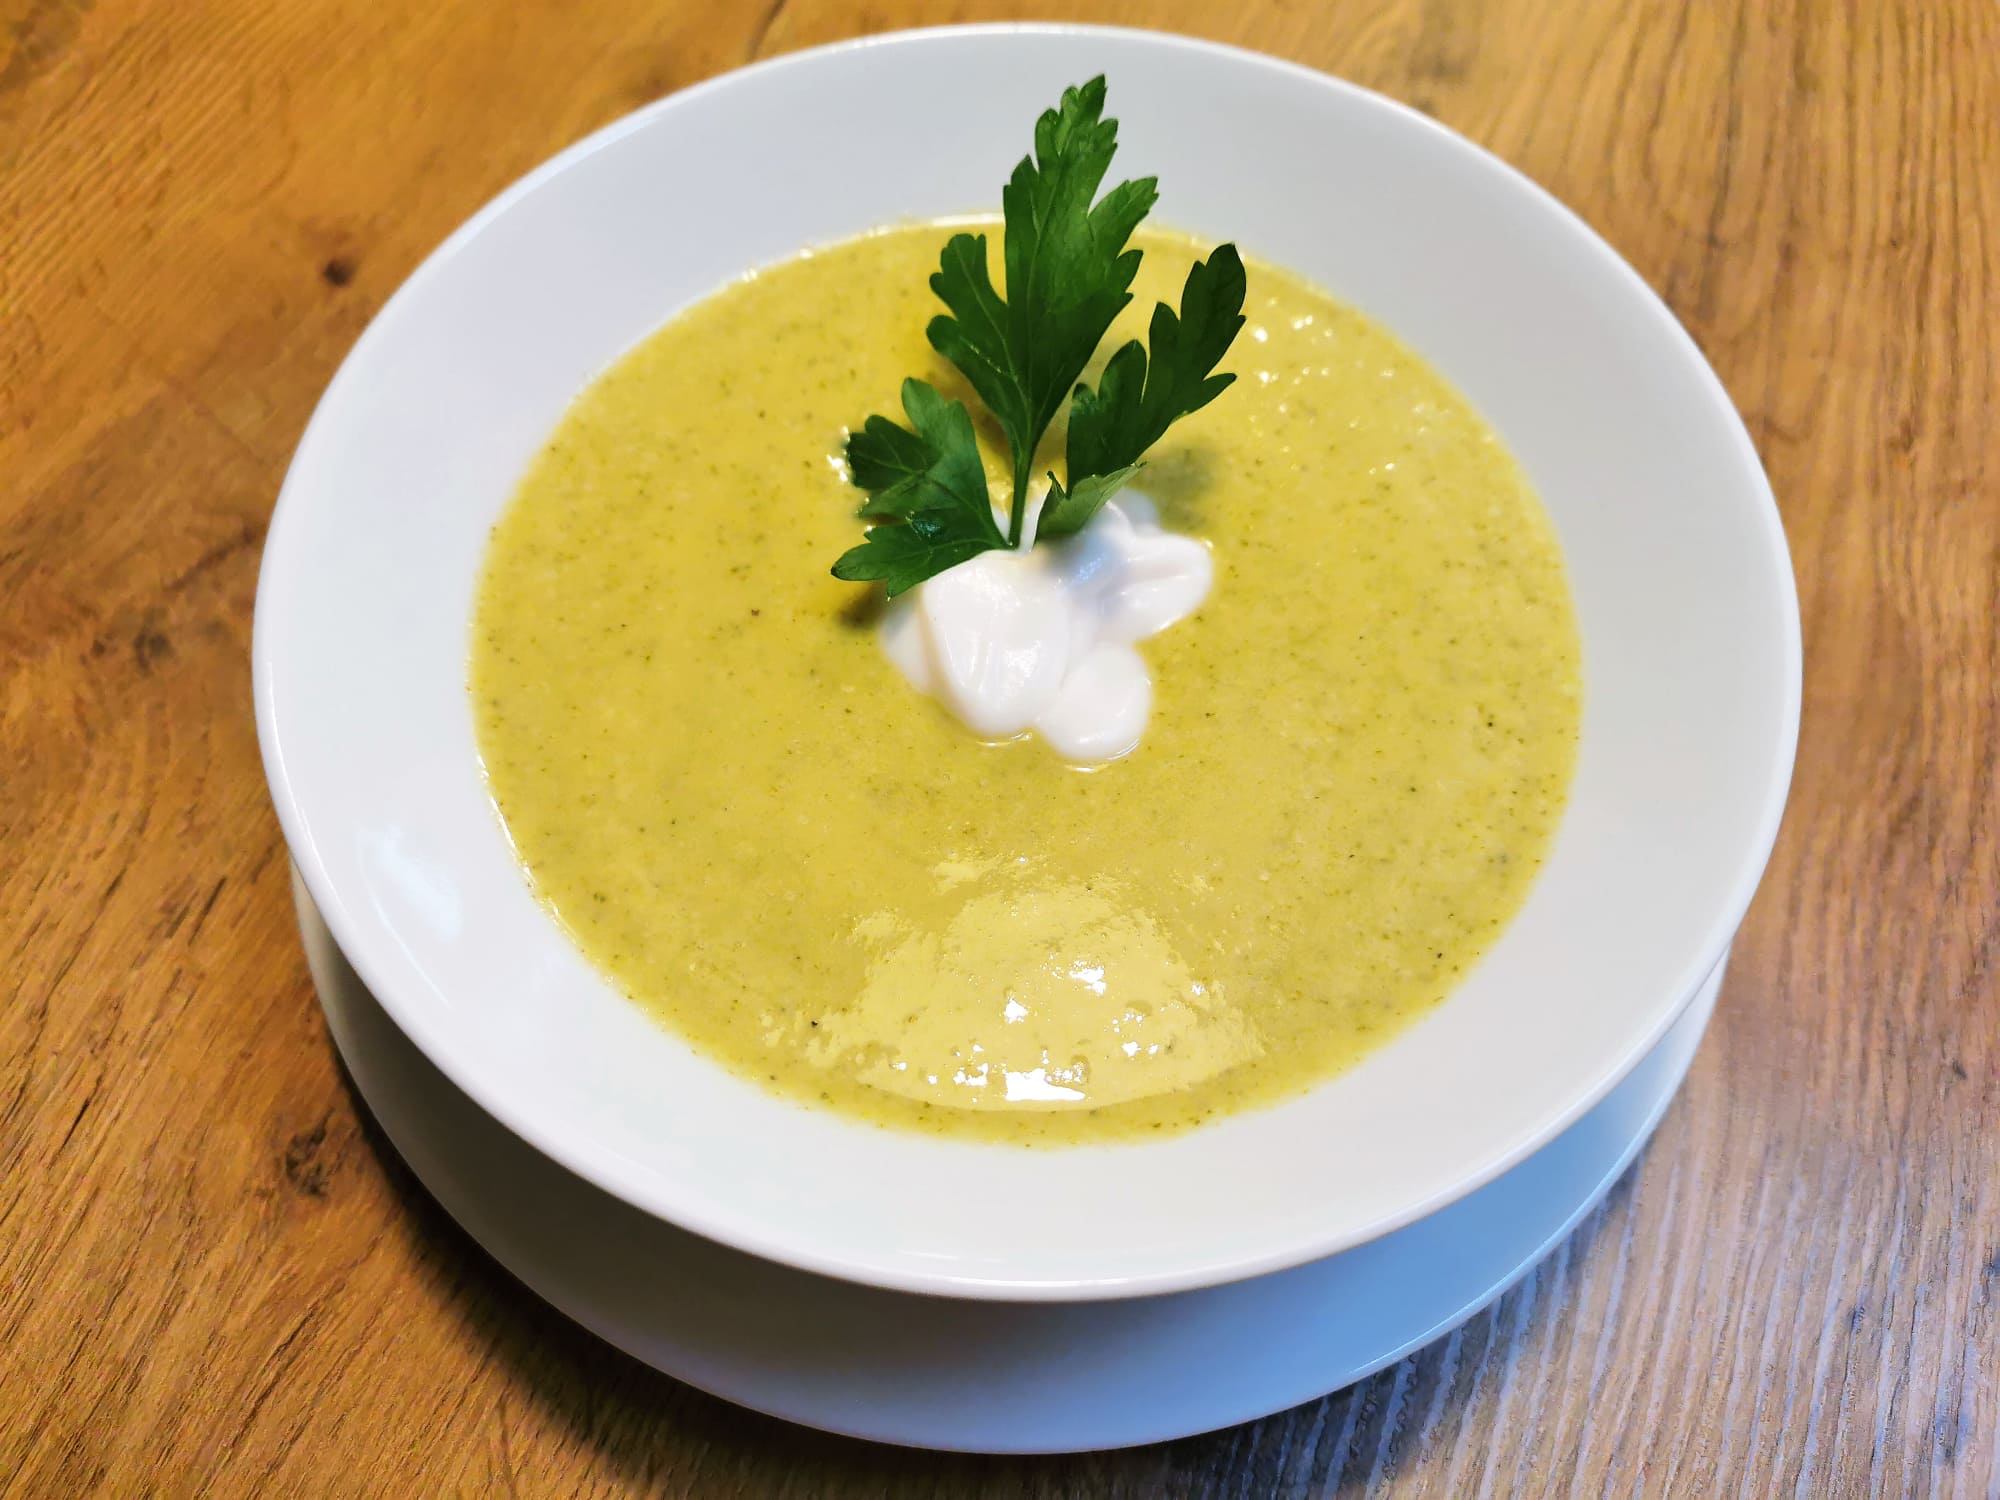 Brokkolicremesuppe serviert in einem weißen Suppenteller, garniert mit einem Klecks Pflanzenjoghurt und einem kleinen Petersilienzweig.